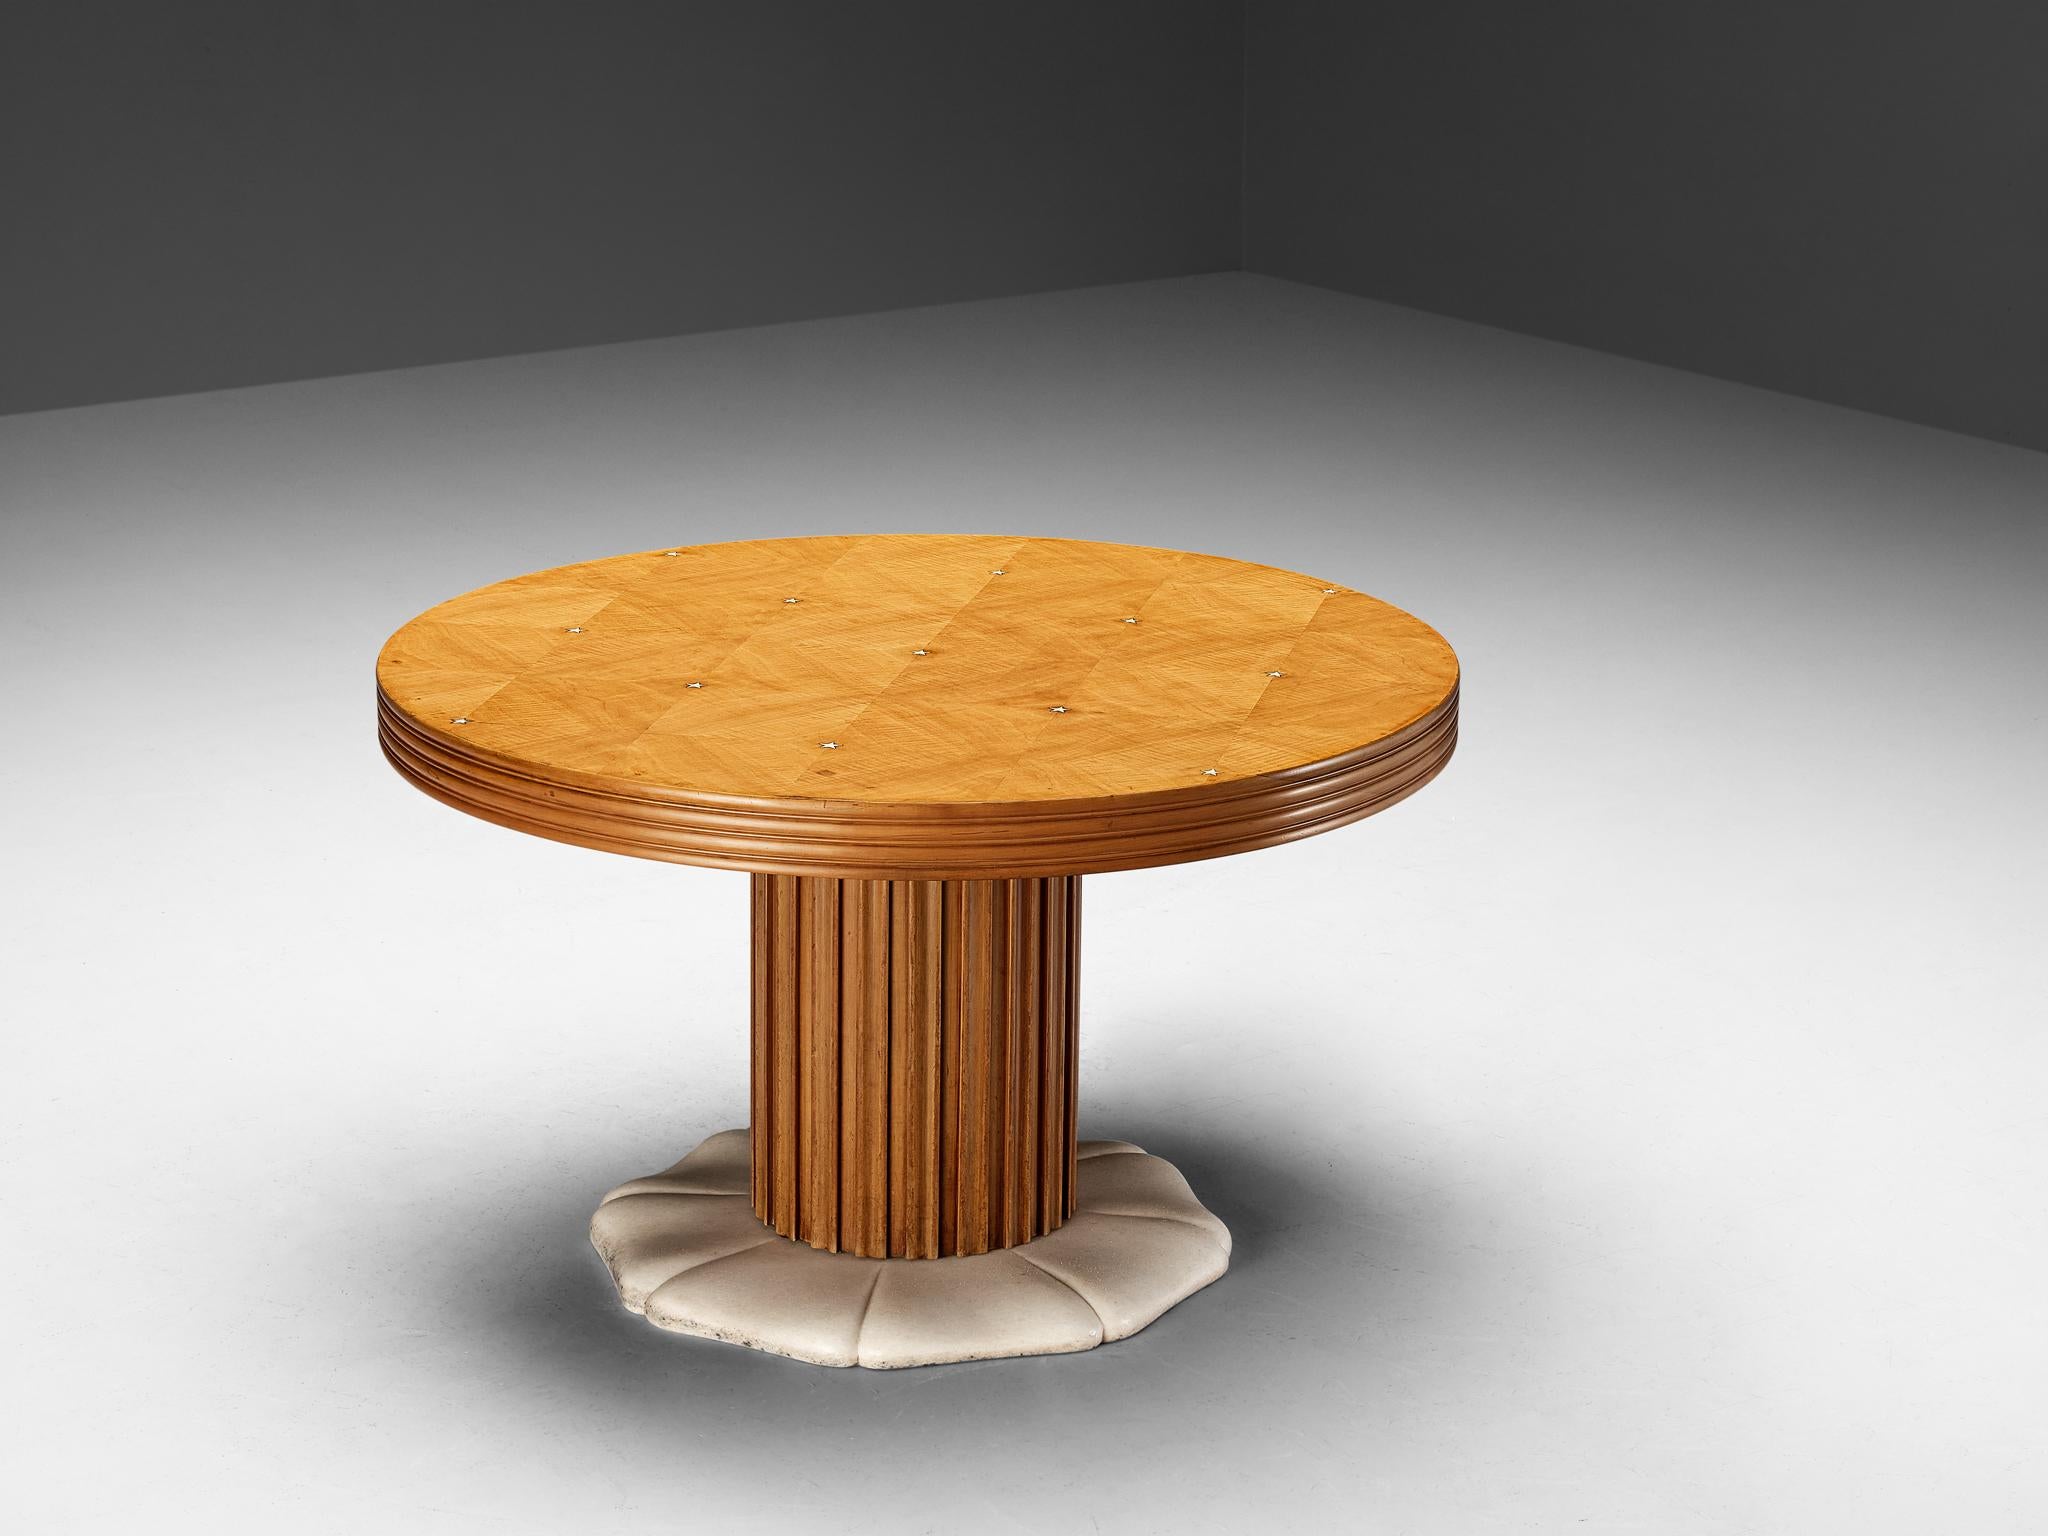 Table ronde Paolo Buffa, laiton, marbre, bois de cerisier, Italie, vers 1940

Un magnifique meuble conçu par Paolo Buffa. Cette table a été fabriquée vers 1940 et présente un design magnifique à bien des égards. Pour commencer par le haut, cette